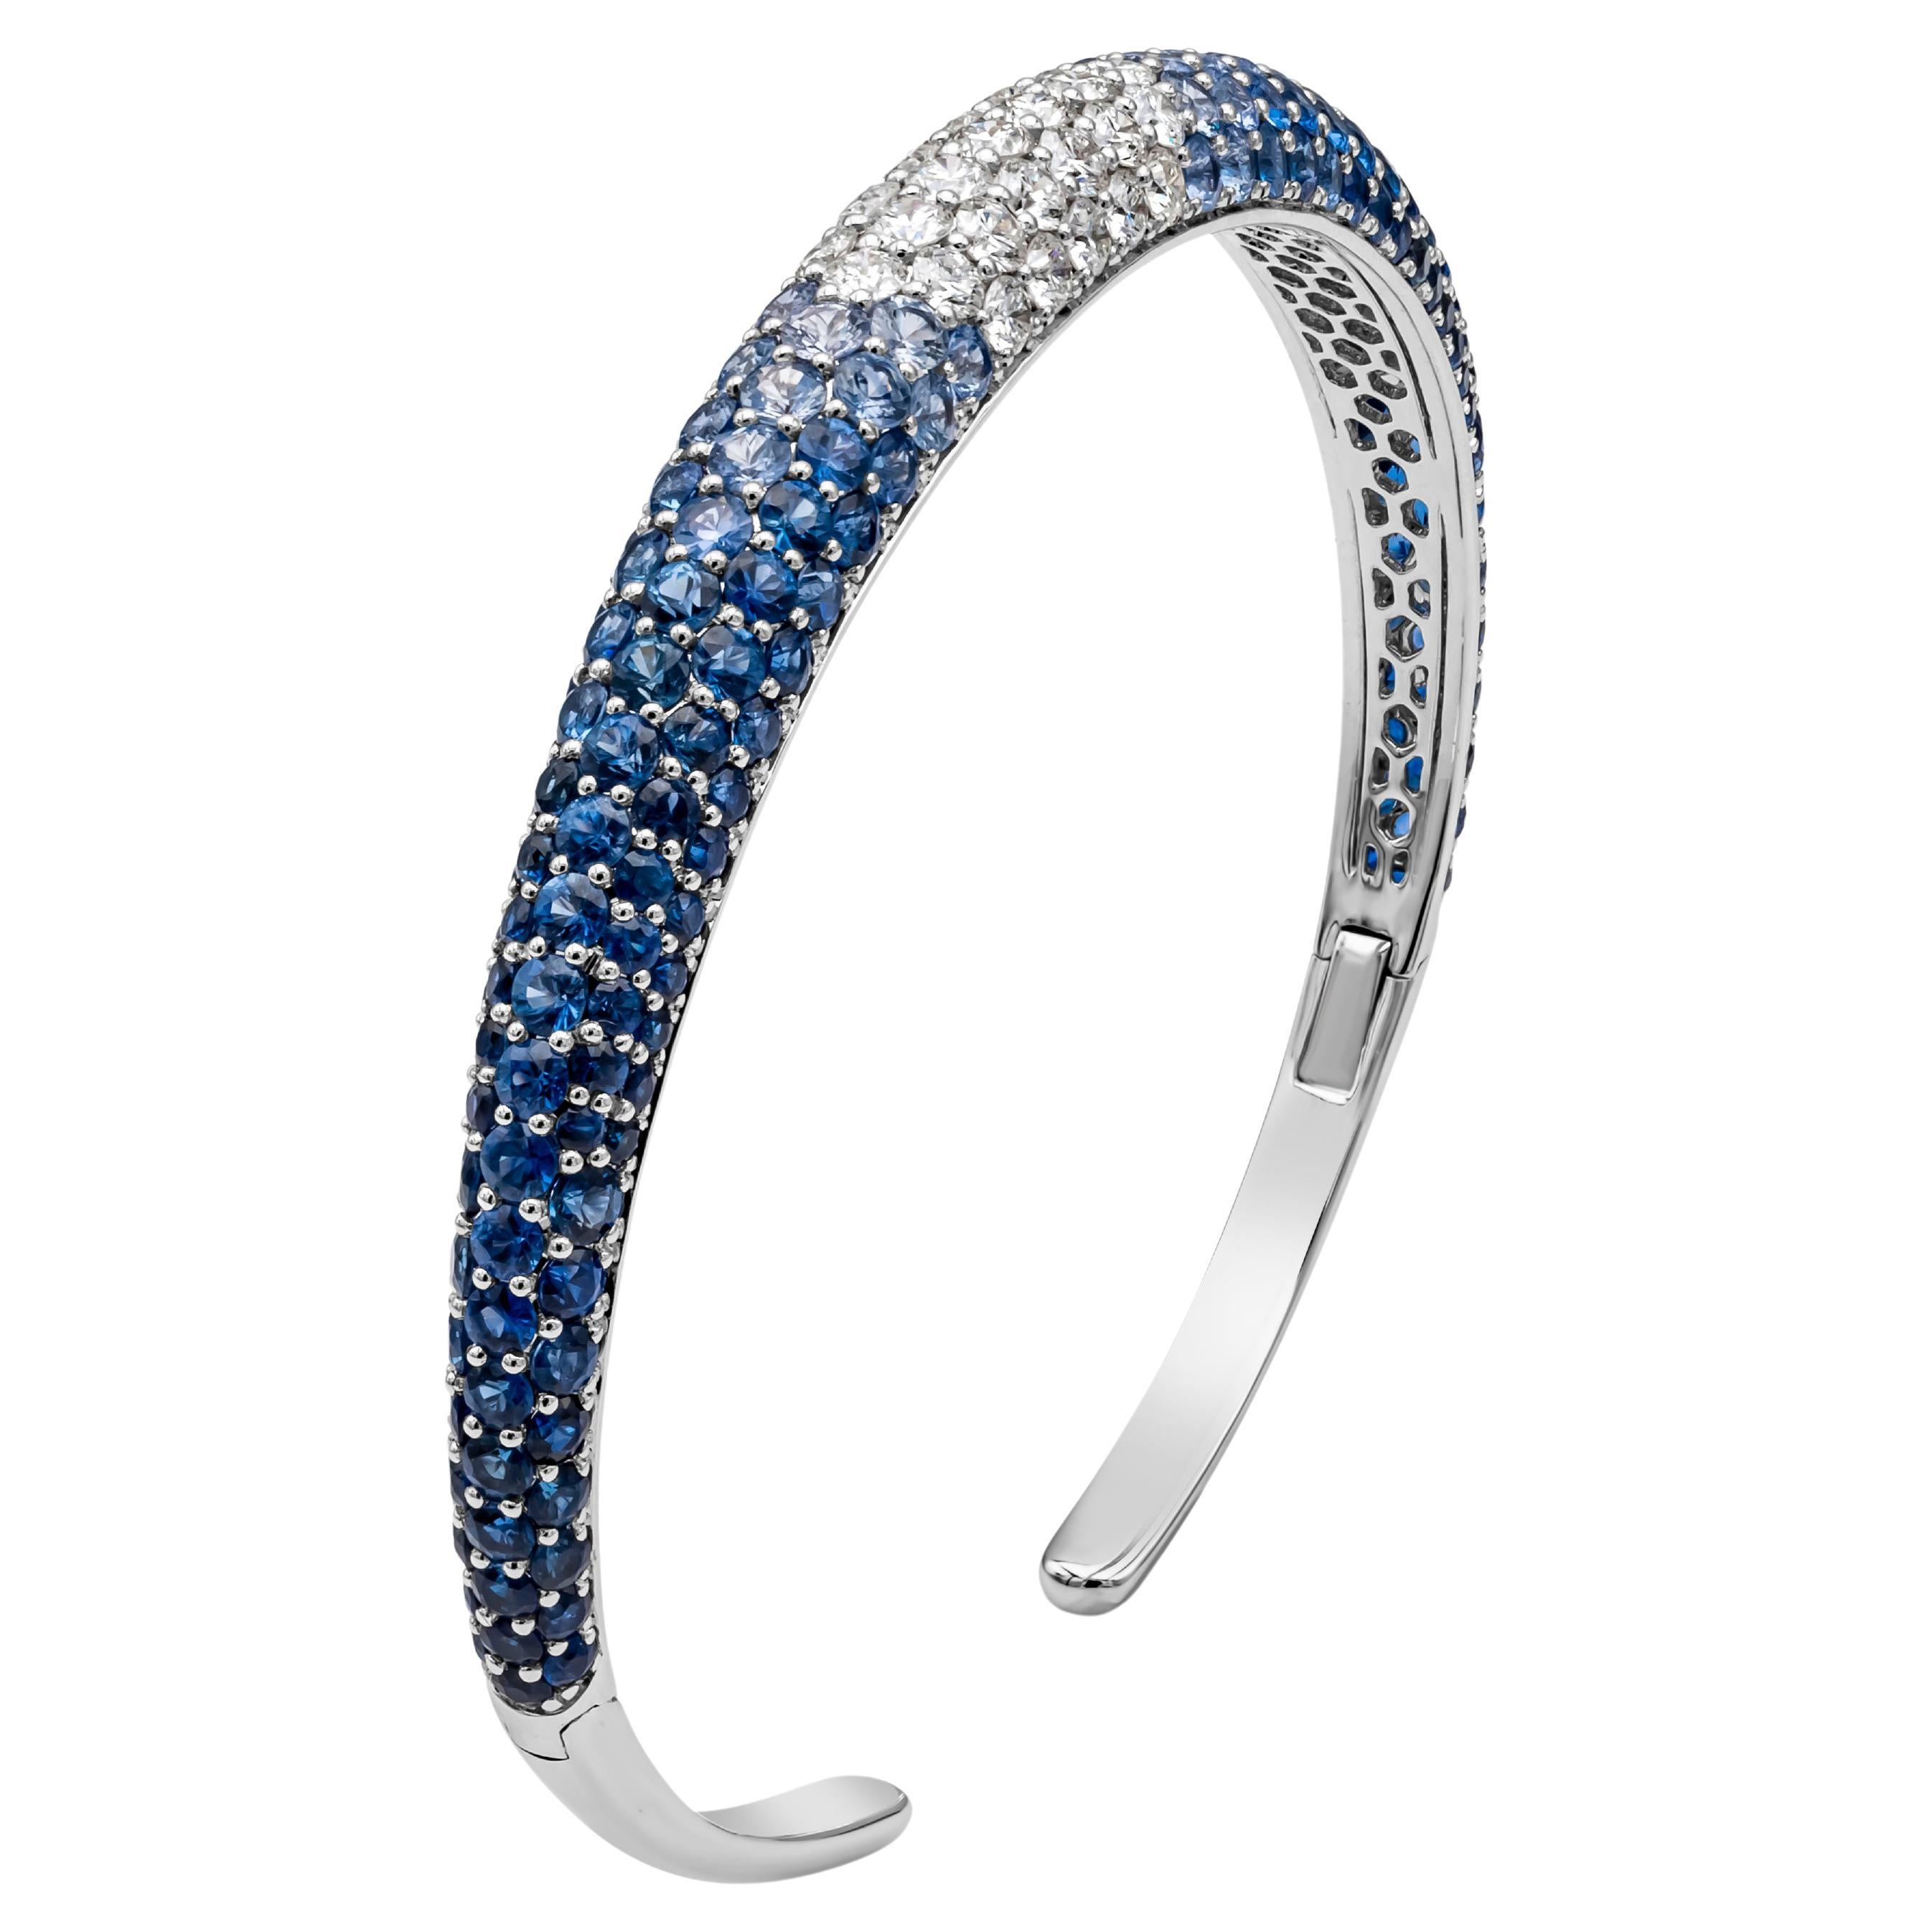 Ce magnifique bracelet-bracelet à la mode met en valeur un saphir bleu et un diamant de 10,05 carats au total, de taille ronde et brillante, riches en couleurs, sertis dans un dôme micro-pavé dans une monture à griffes partagées. Les diamants sont